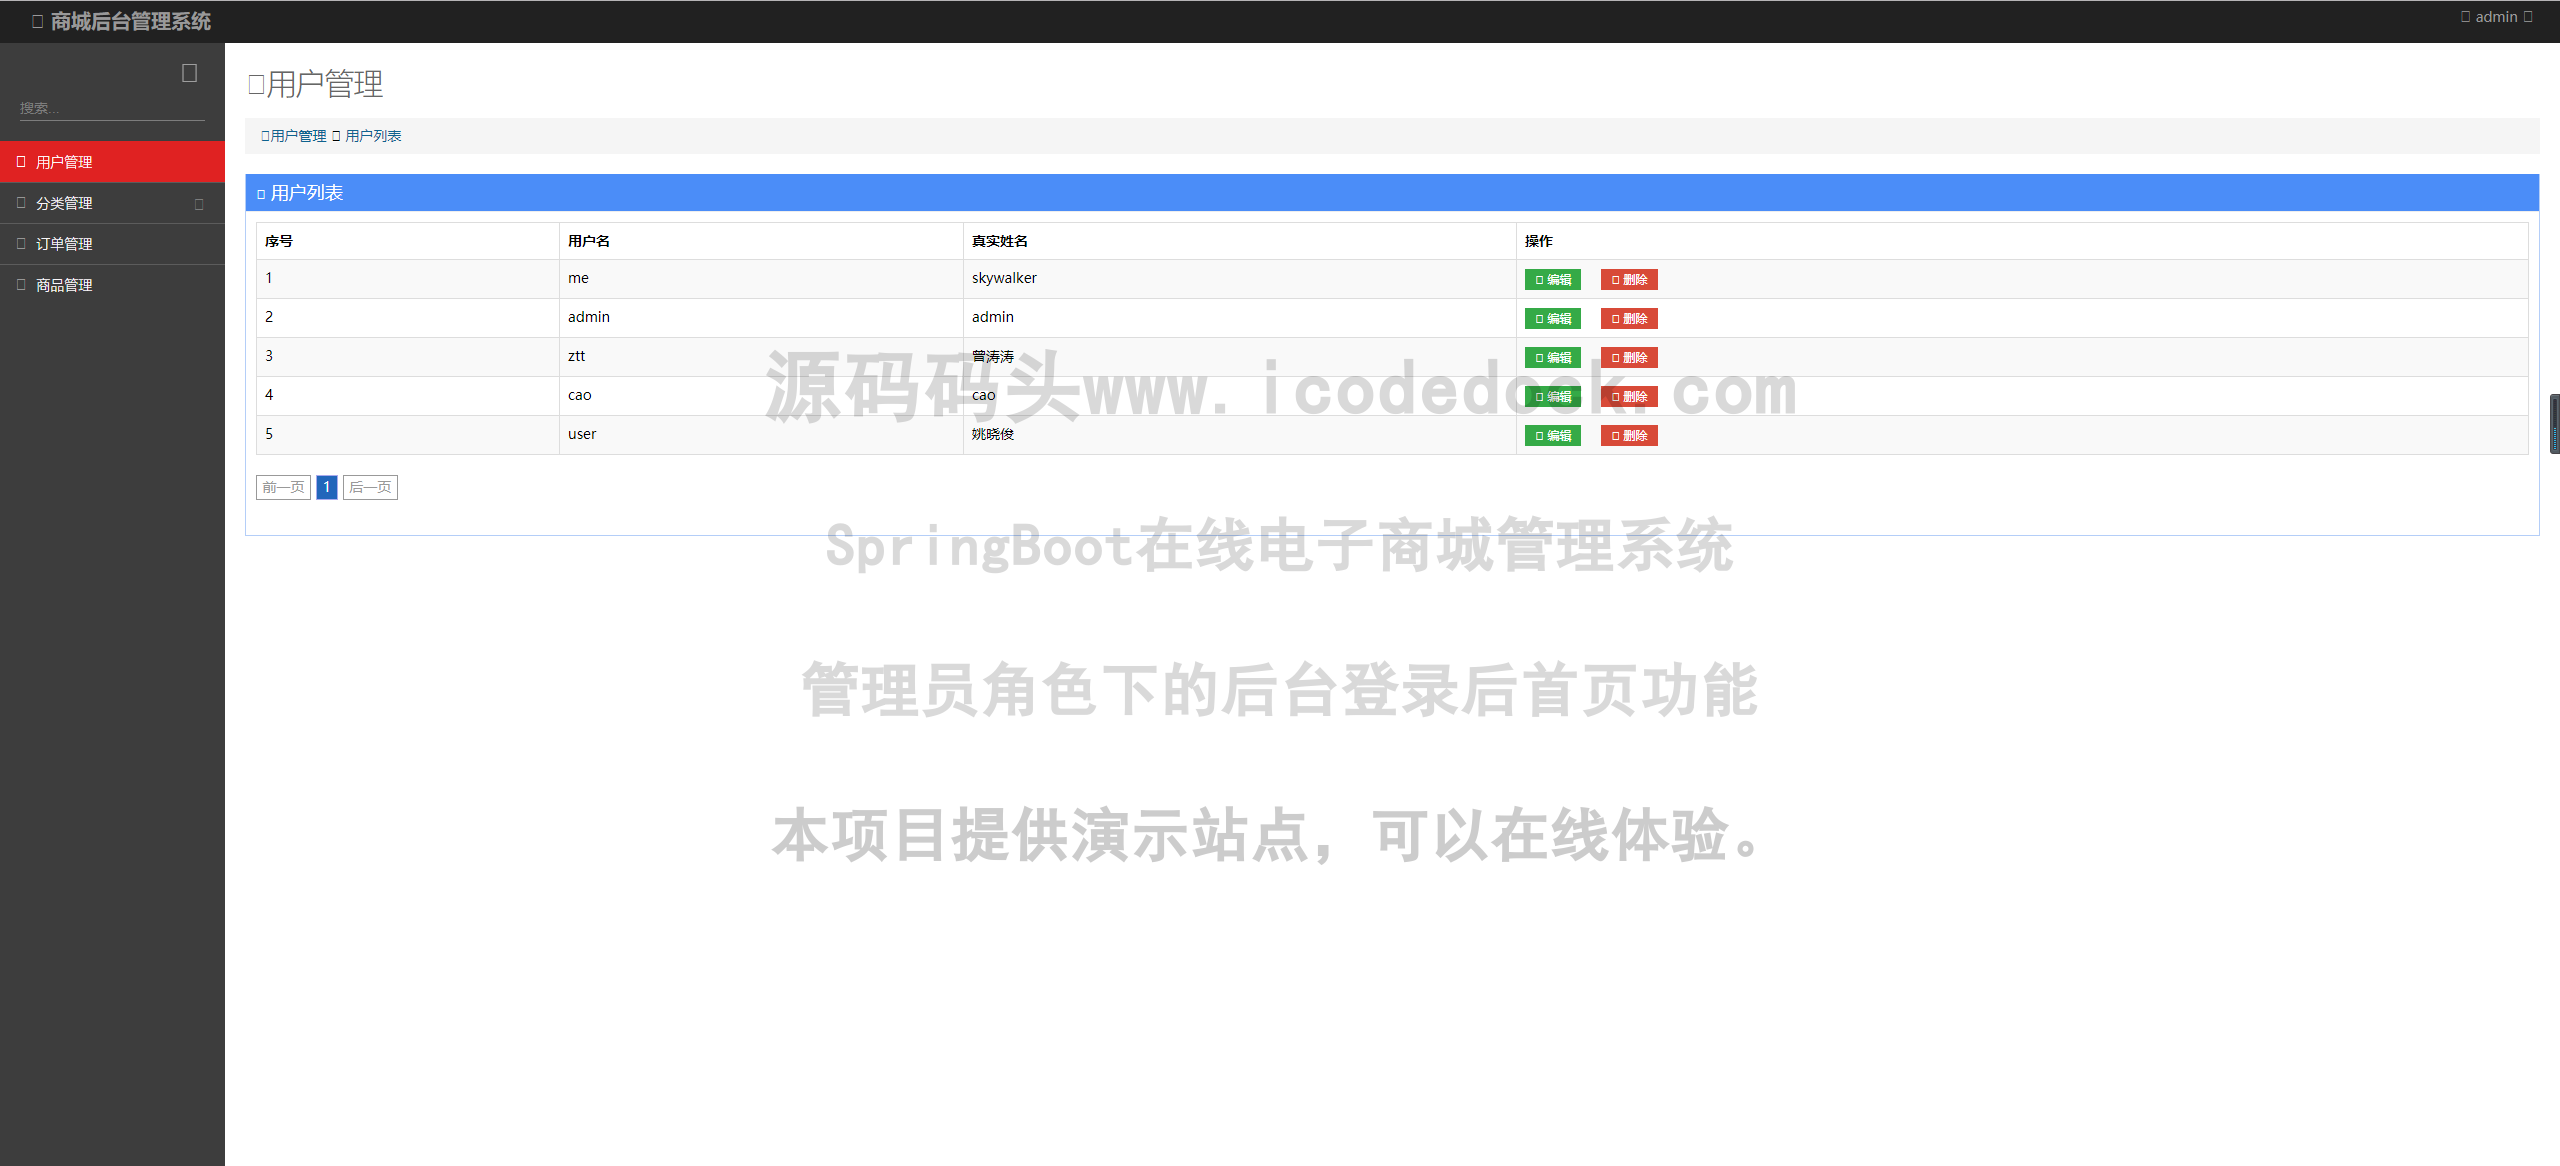 源码码头-SpringBoot在线电子商城管理系统-管理员角色-后台登录后首页